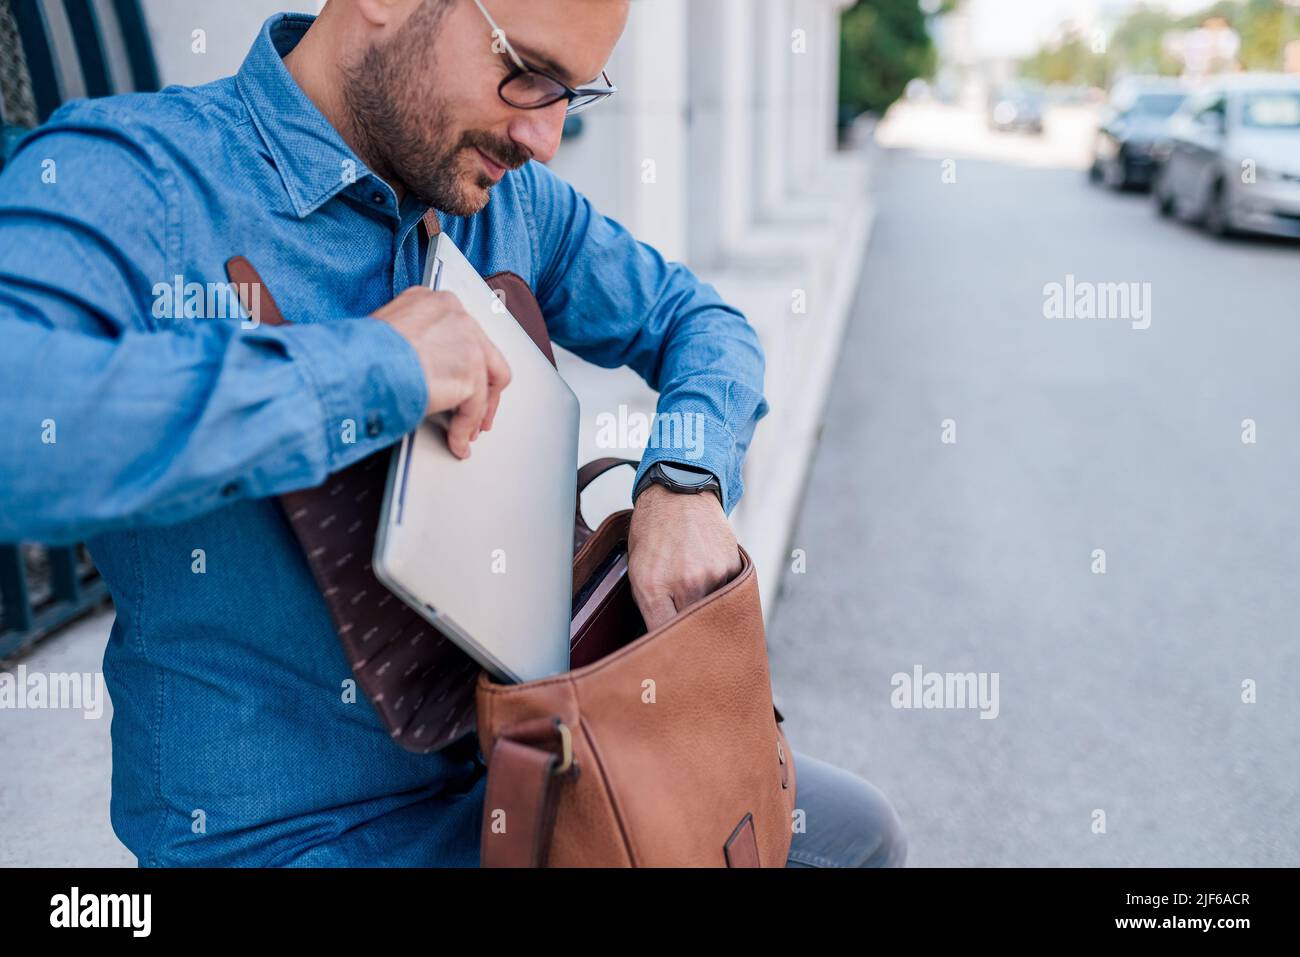 Un jeune homme d'affaires garde son ordinateur portable dans son sac. Homme professionnel de transport dans les coffals est assis contre le bâtiment. Il travaille sur le trottoir dans la ville. Banque D'Images